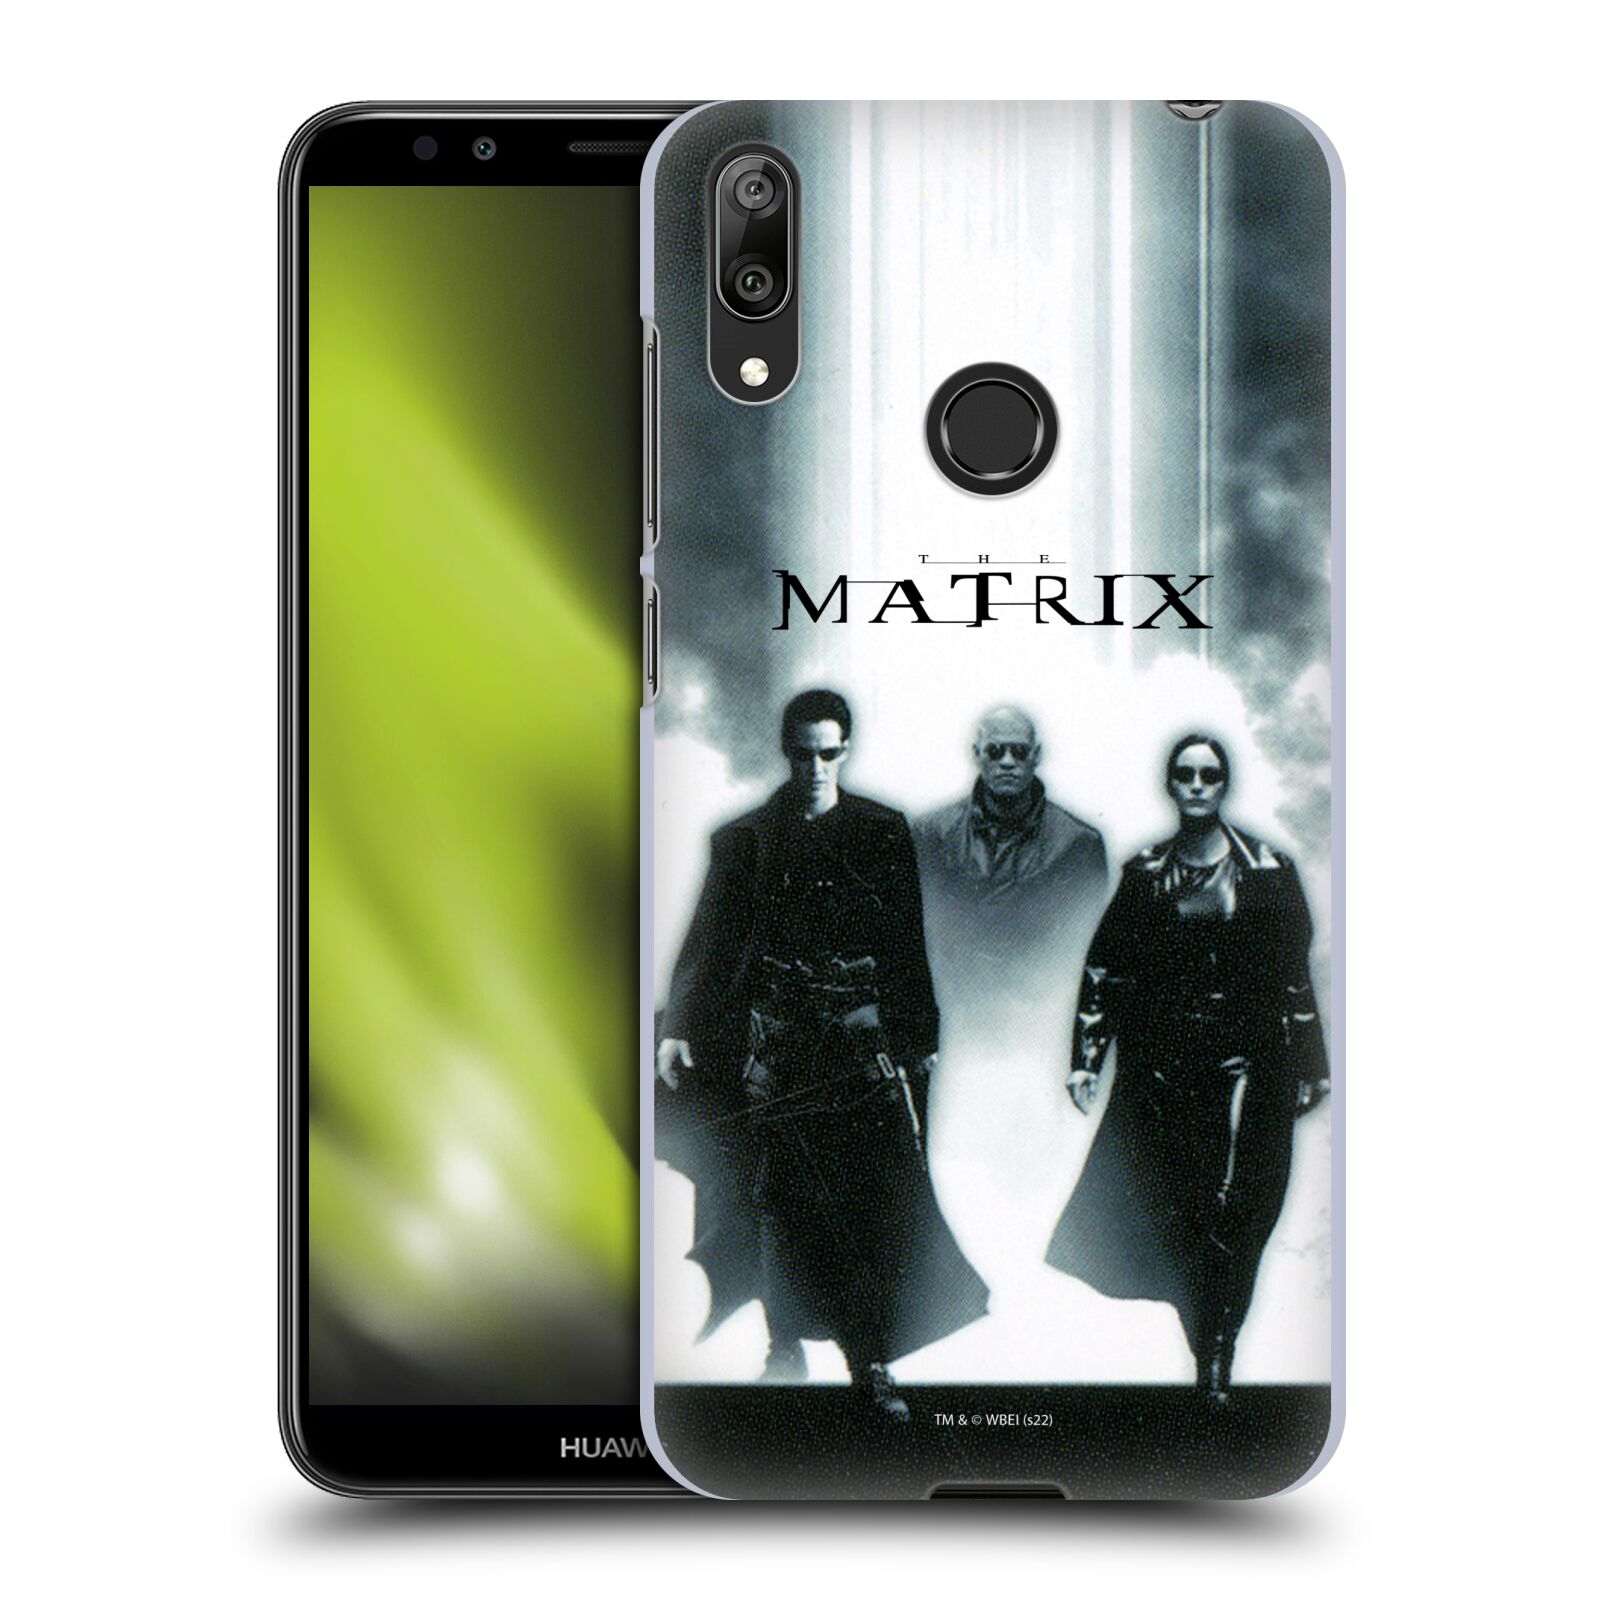 Pouzdro na mobil Huawei Y7 2019 - HEAD CASE - Matrix - Neo, Morpheus, Trinity